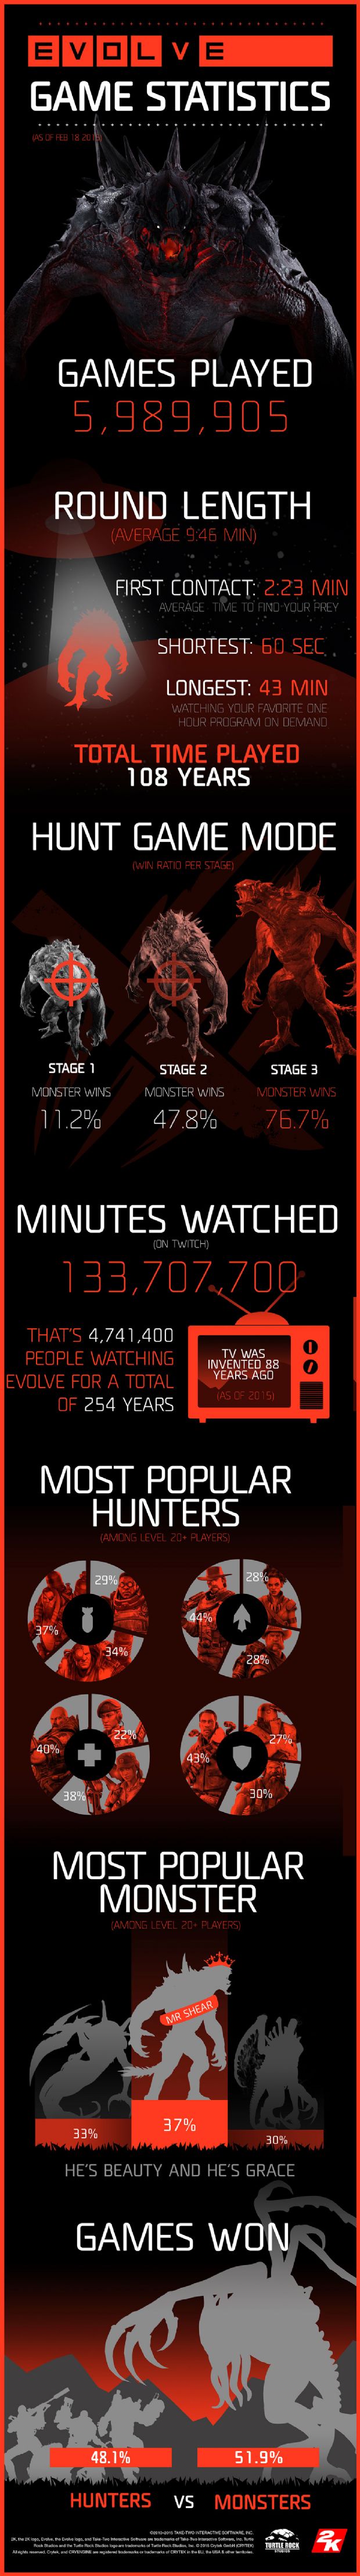 Evolve çıkışından beri 6 milyon maç oynandı